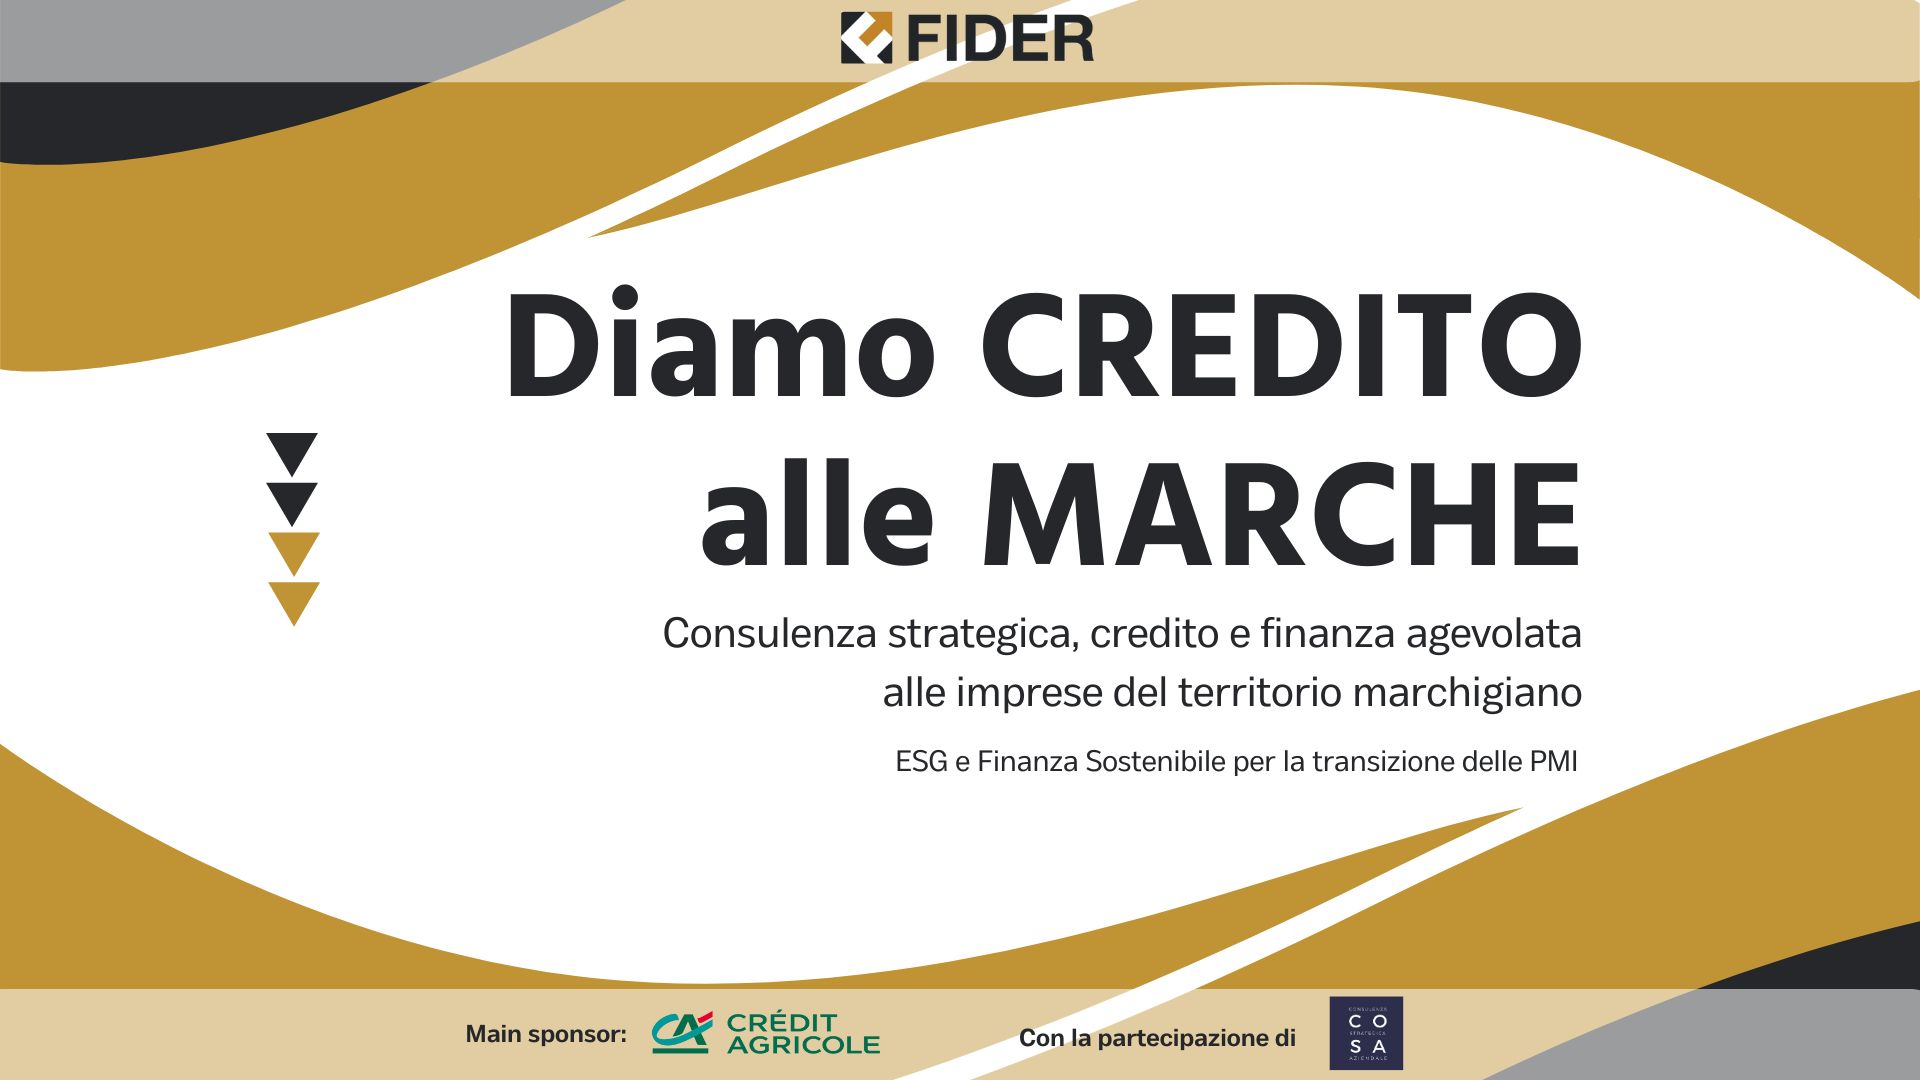 Convegno Fider: "Diamo Credito alle Marche" - La rassegna stampa